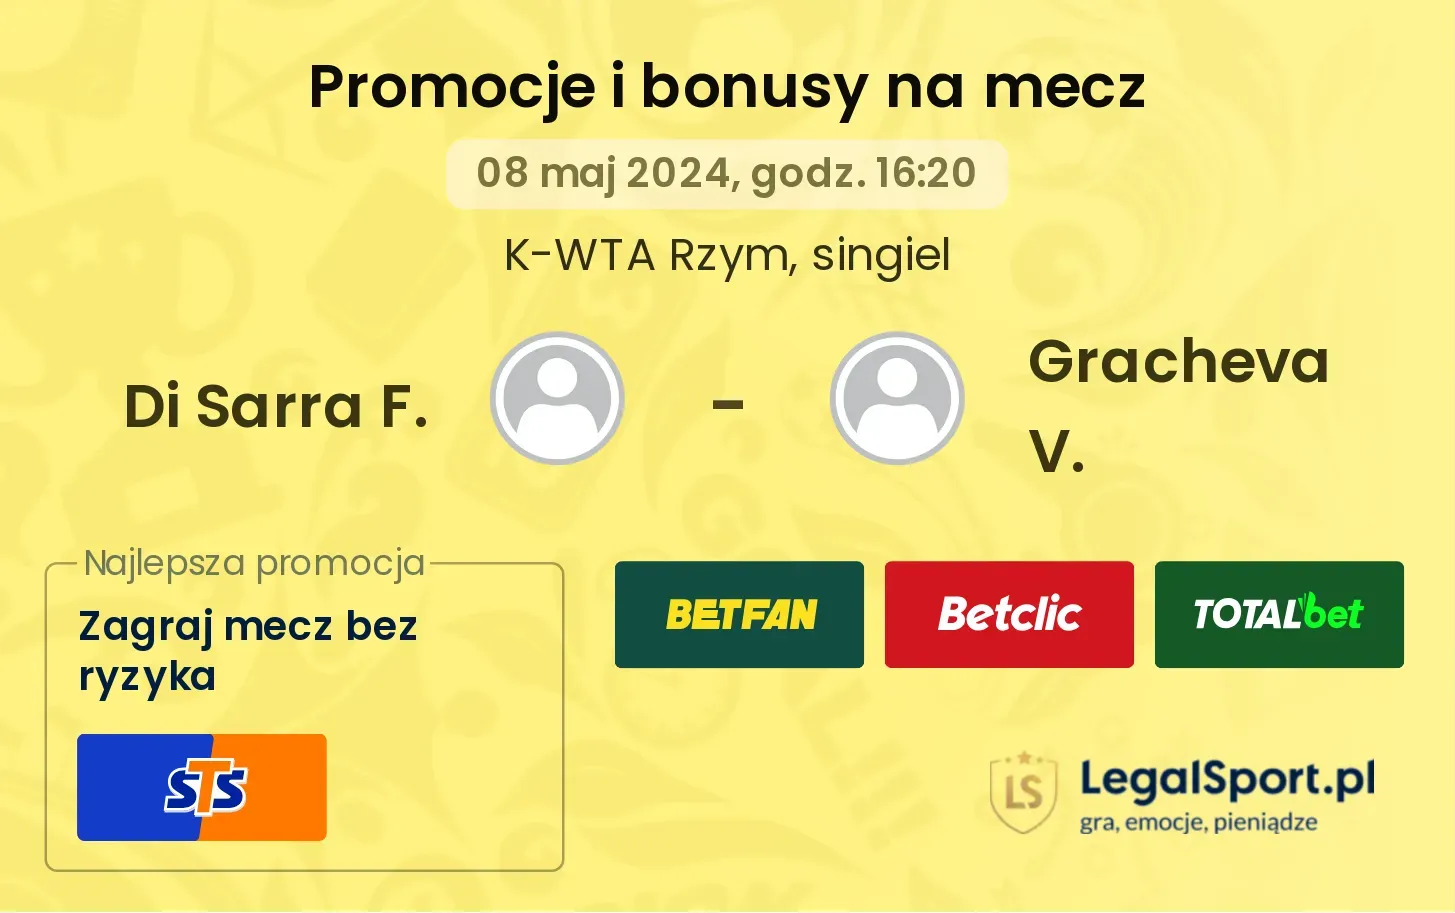 Di Sarra F. - Gracheva V. promocje bonusy na mecz